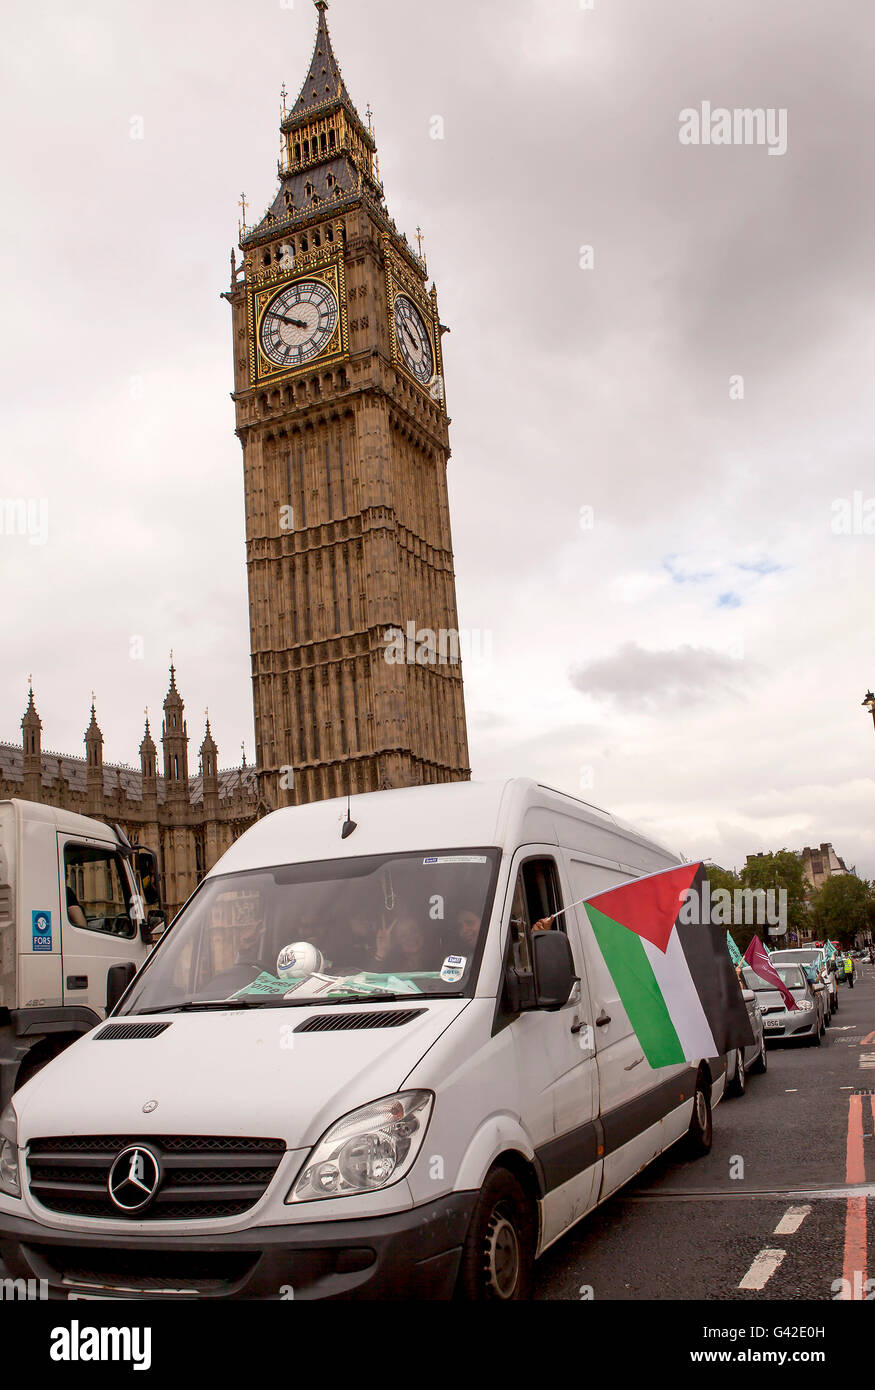 Londra, Regno Unito. Il 18 giugno, 2016. I rifugiati benvenuto. Una flotta di veicoli si sono incontrati a Whitehall questa mattina per iniziare un convoglio diretto a Calais, in particolare la giungla, a fornire aiuti ai profughi. Credito: Jane Campbell/Alamy Live News Foto Stock